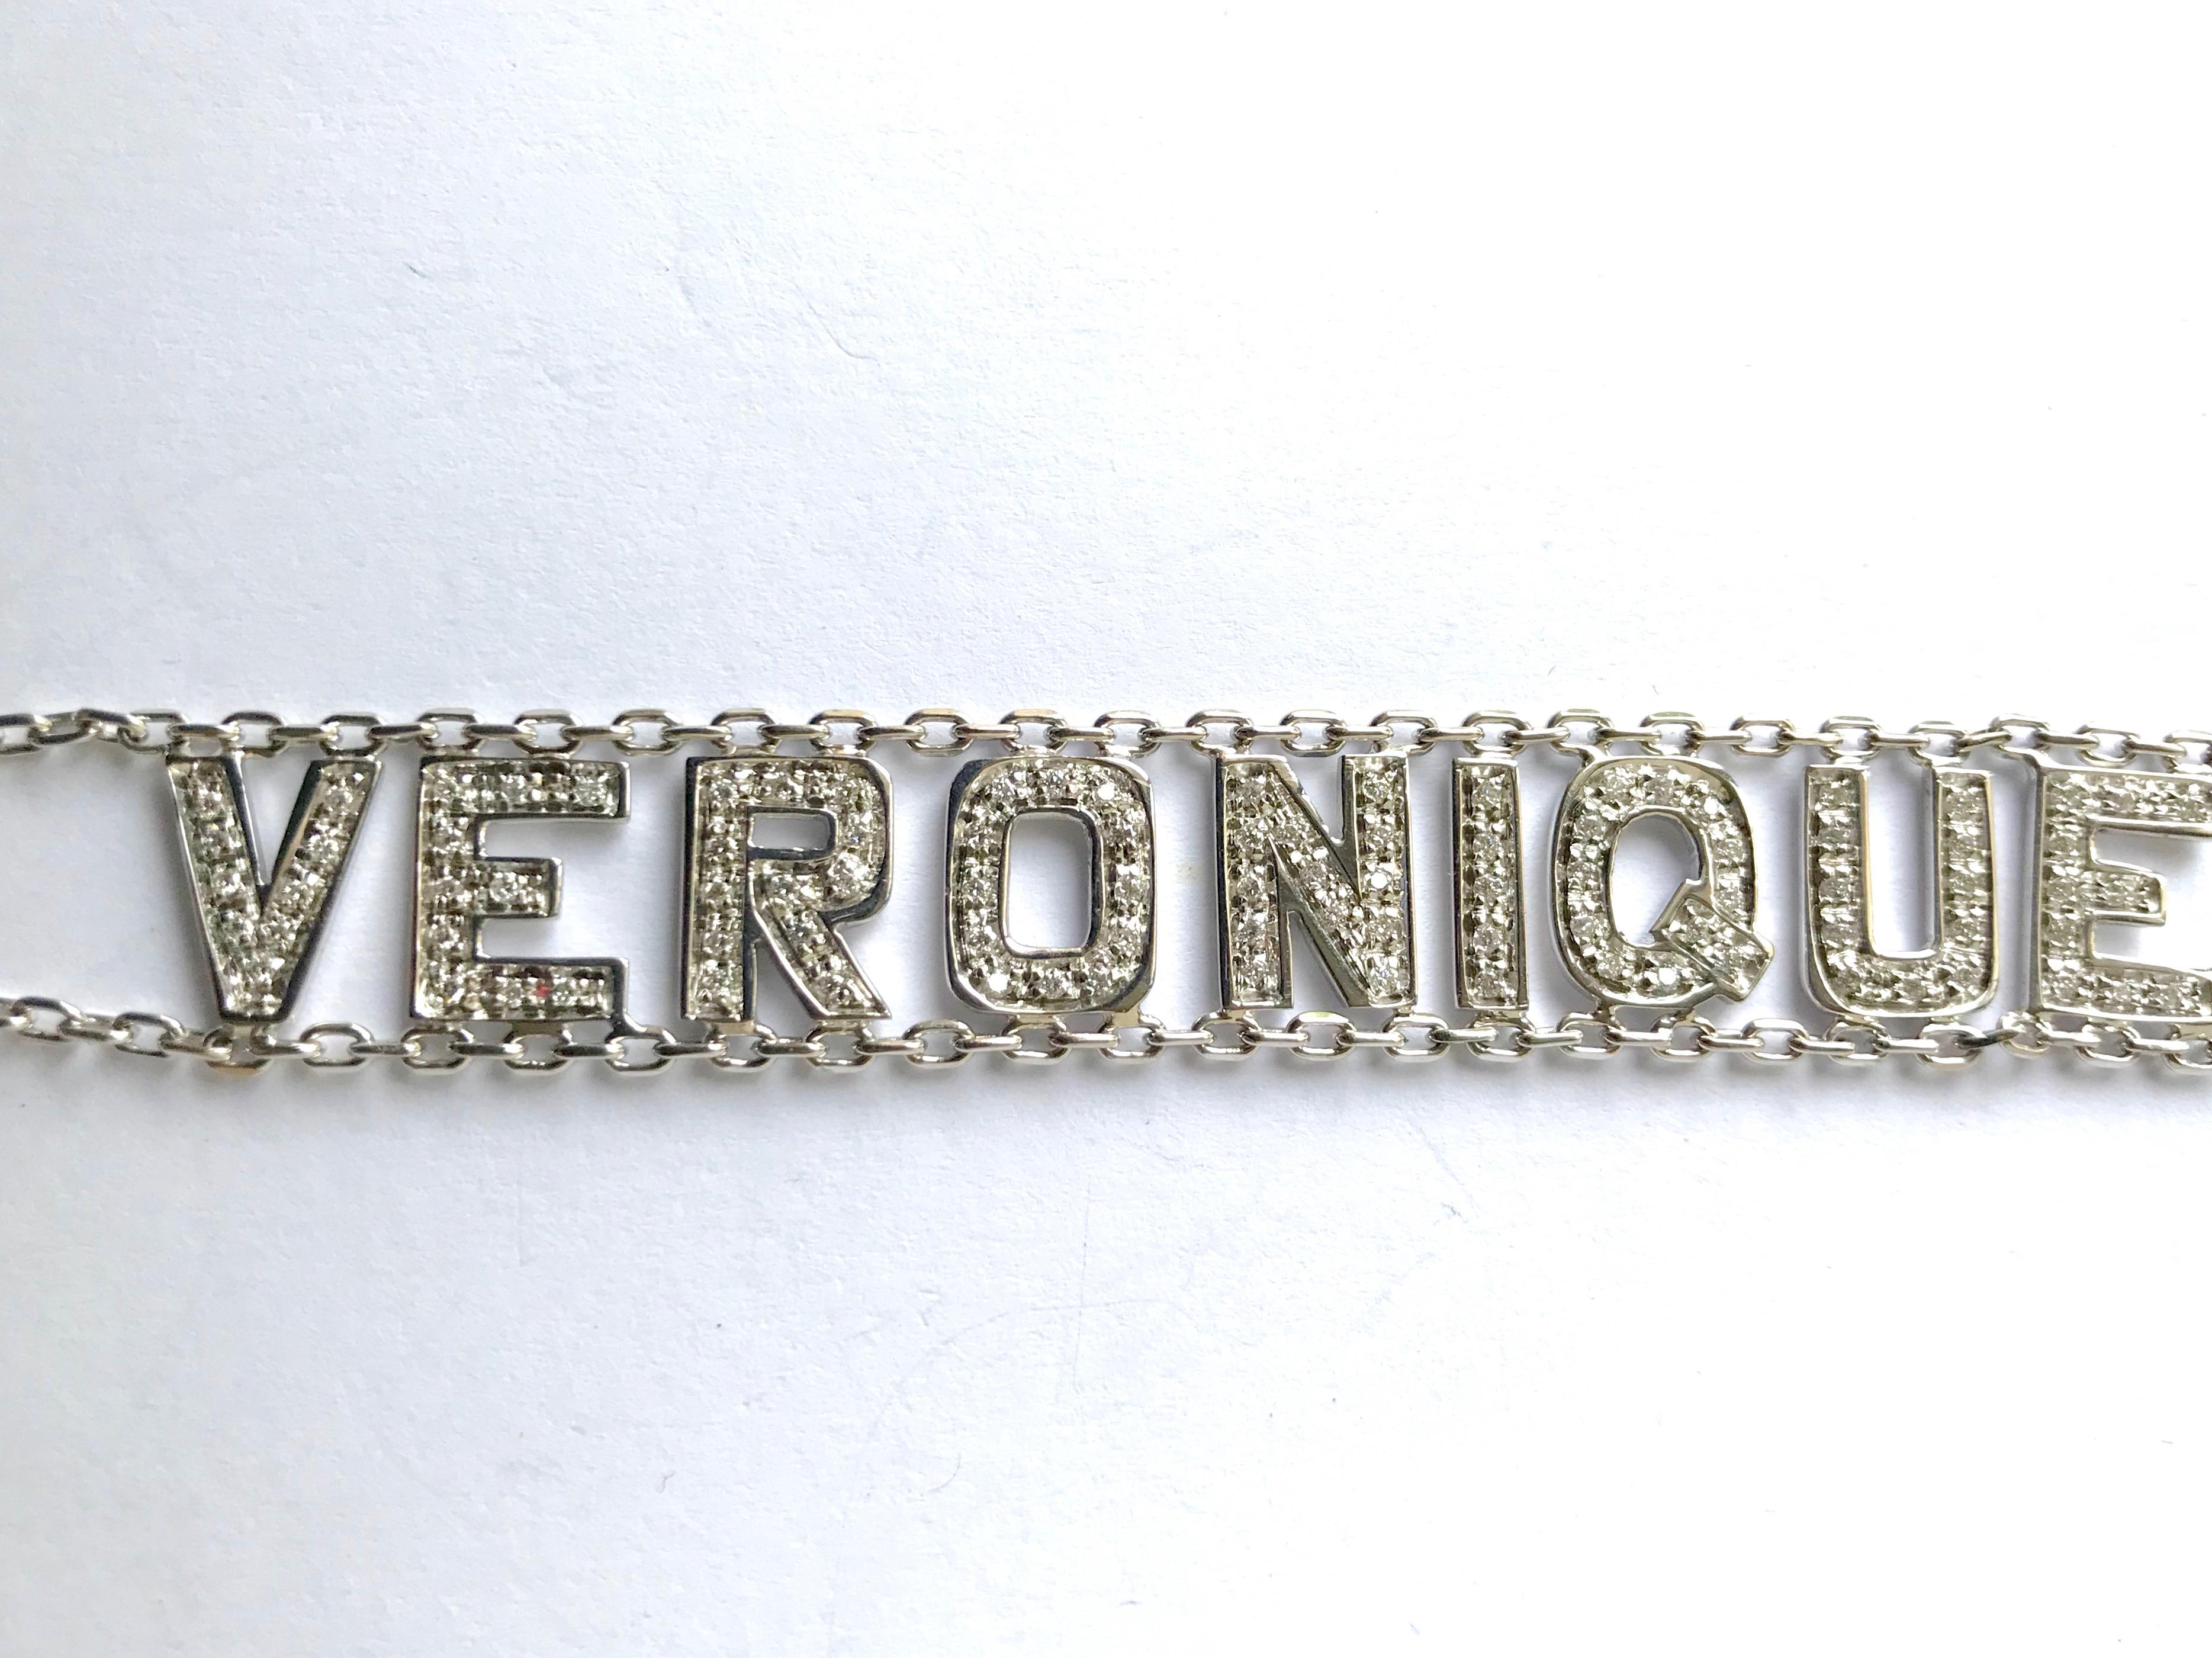 Bracelet en or blanc 18 Kt (750 mil) et diamants avec le prénom Véronique. 
Deux chaînes en or blanc 18 carats portent le prénom VERONIQUE, dont les lettres sont entièrement serties de diamants. Ce bracelet est numéroté et en très bon état.
Poids